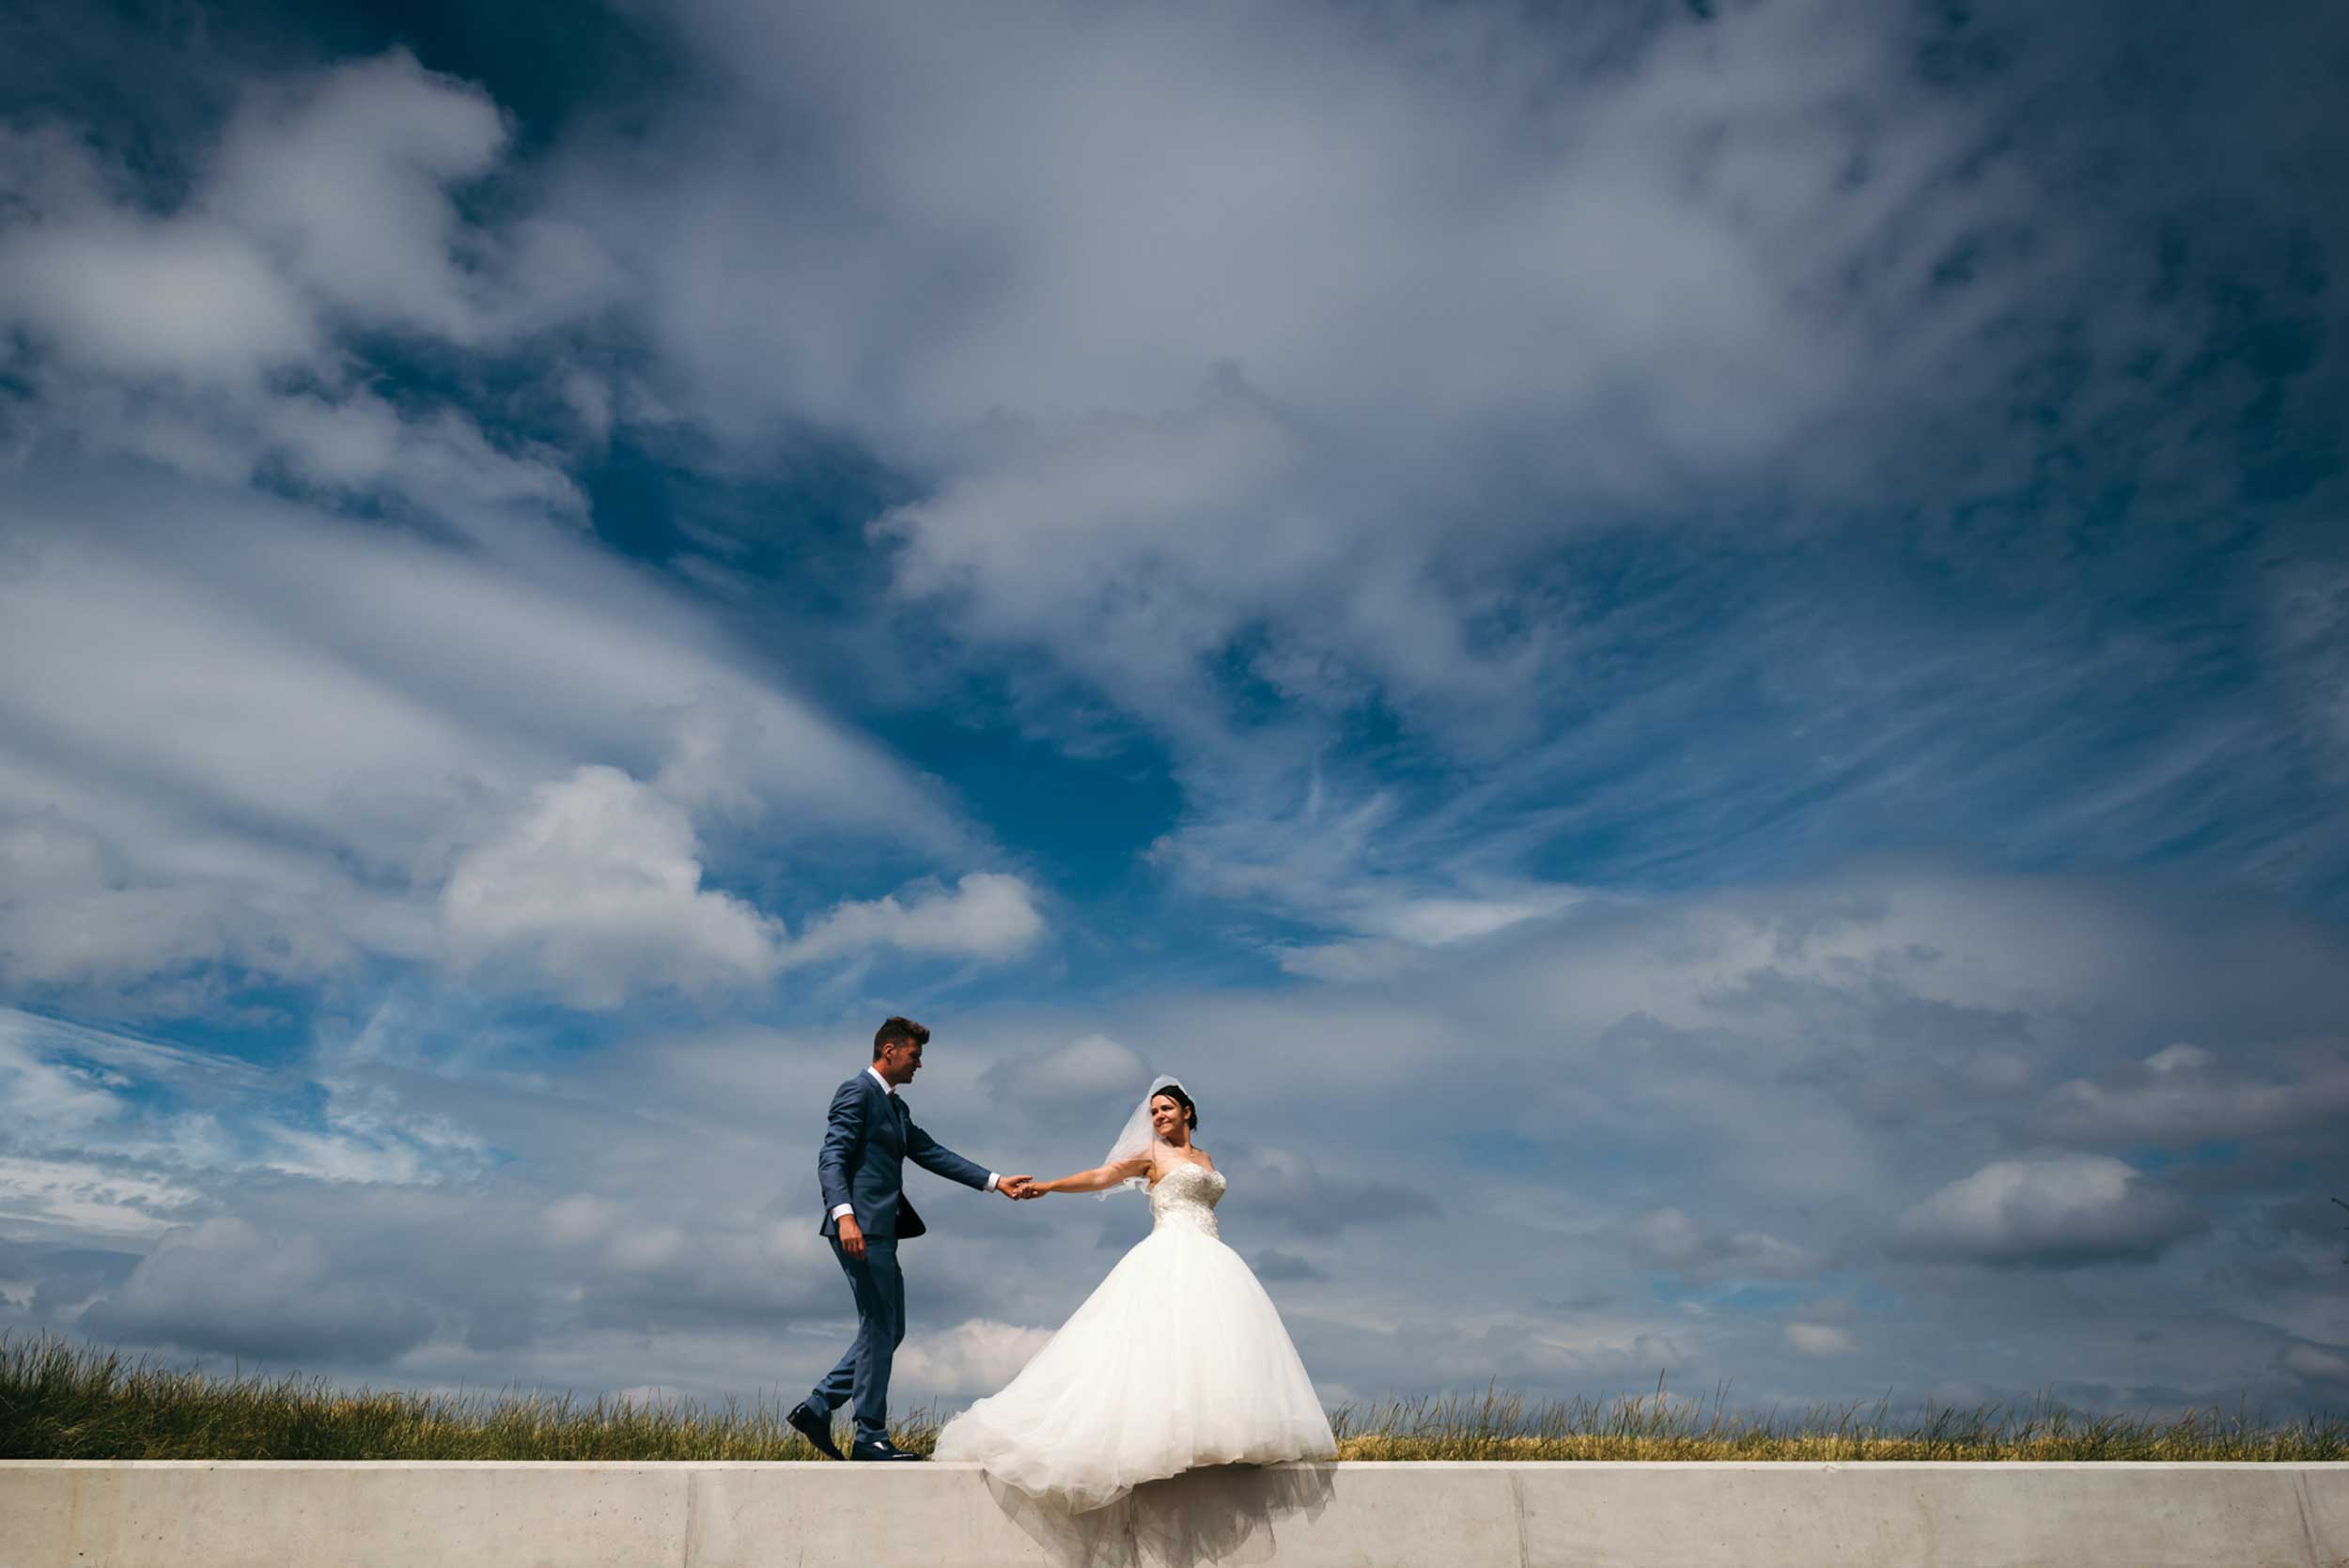 Een prachtig beeld van eenvoud: het bruidspaar wandelt hand in hand en steekt af tegen de zachte contouren van de wolken, een intiem moment van sereniteit en verbondenheid.